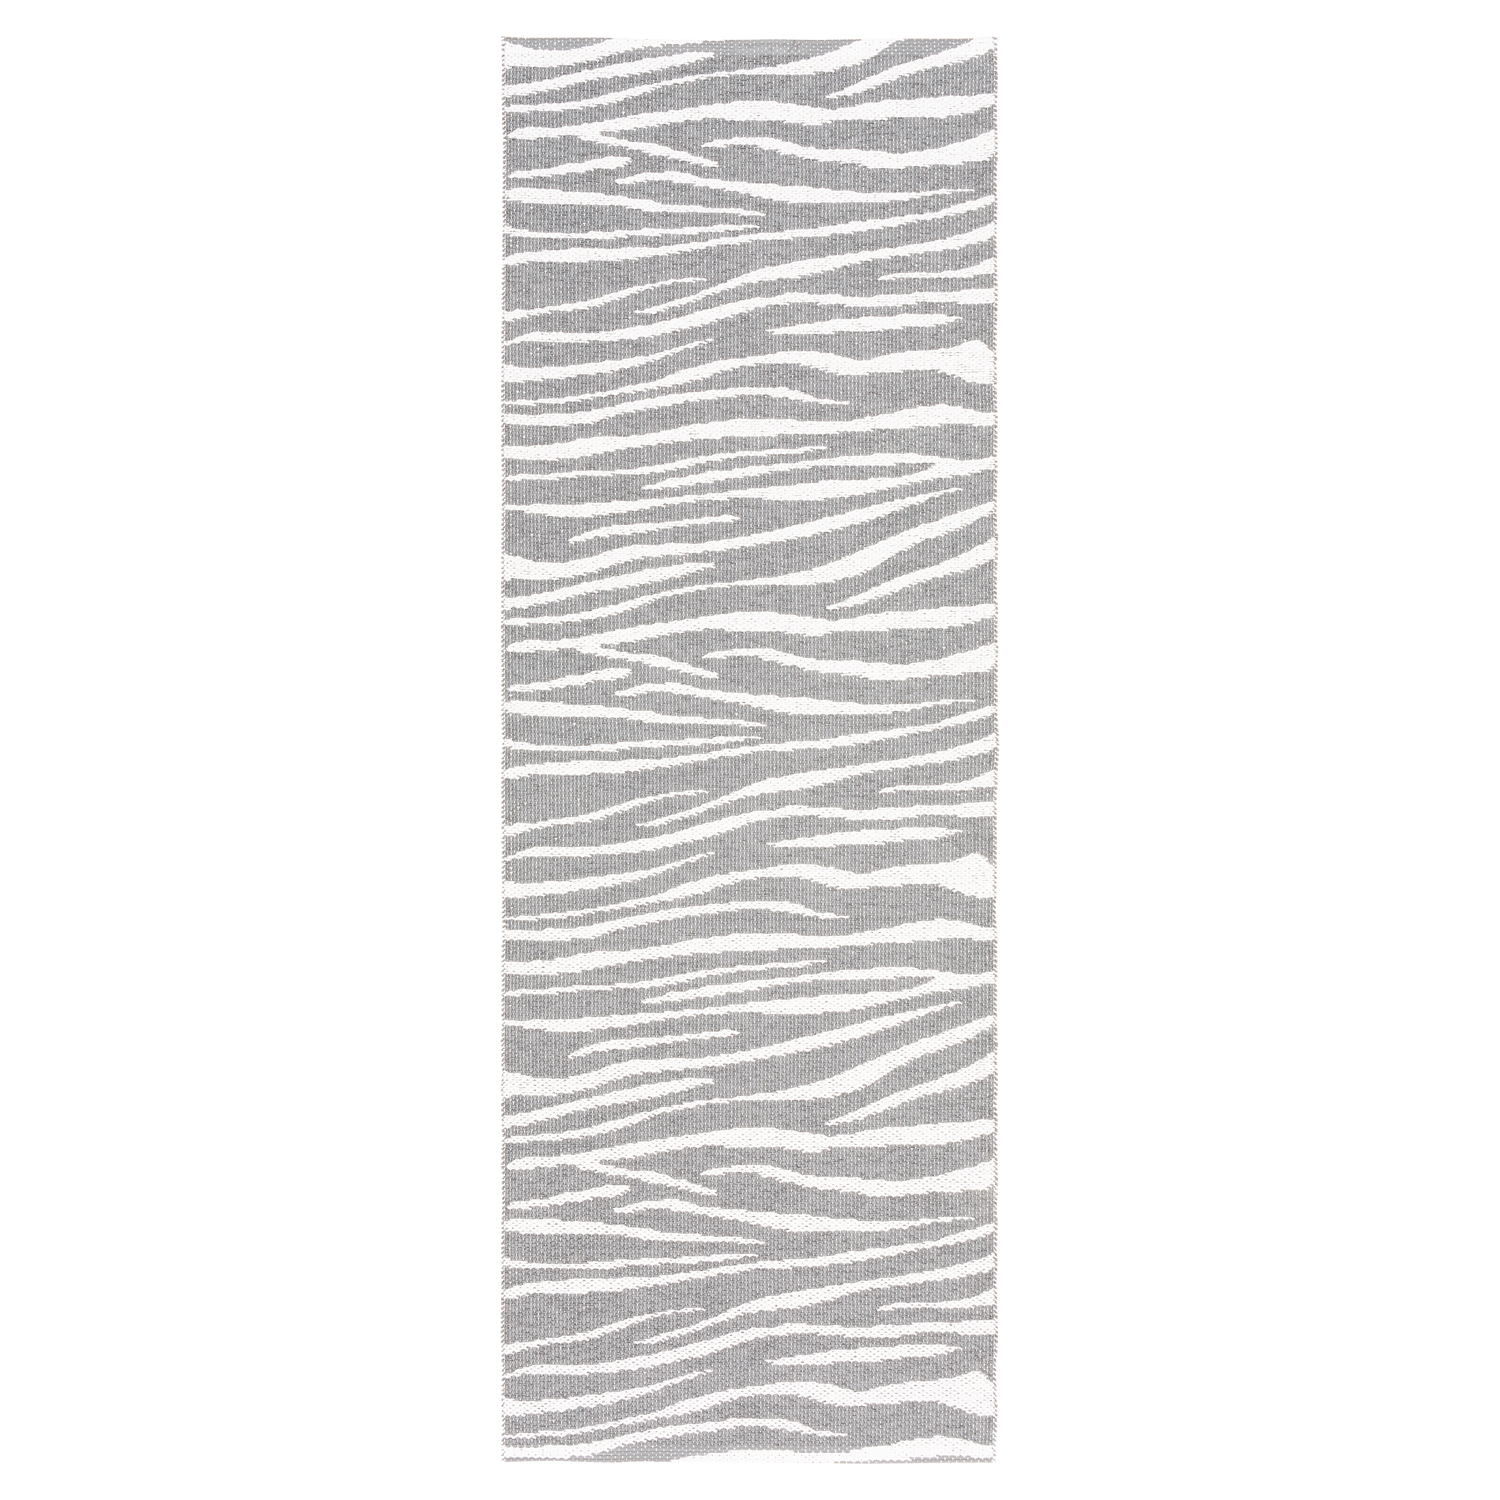 Horredsmattan Teppich Zebra Grey für Innen und Aussen Made in Sweden since 1956 UV-Beständig